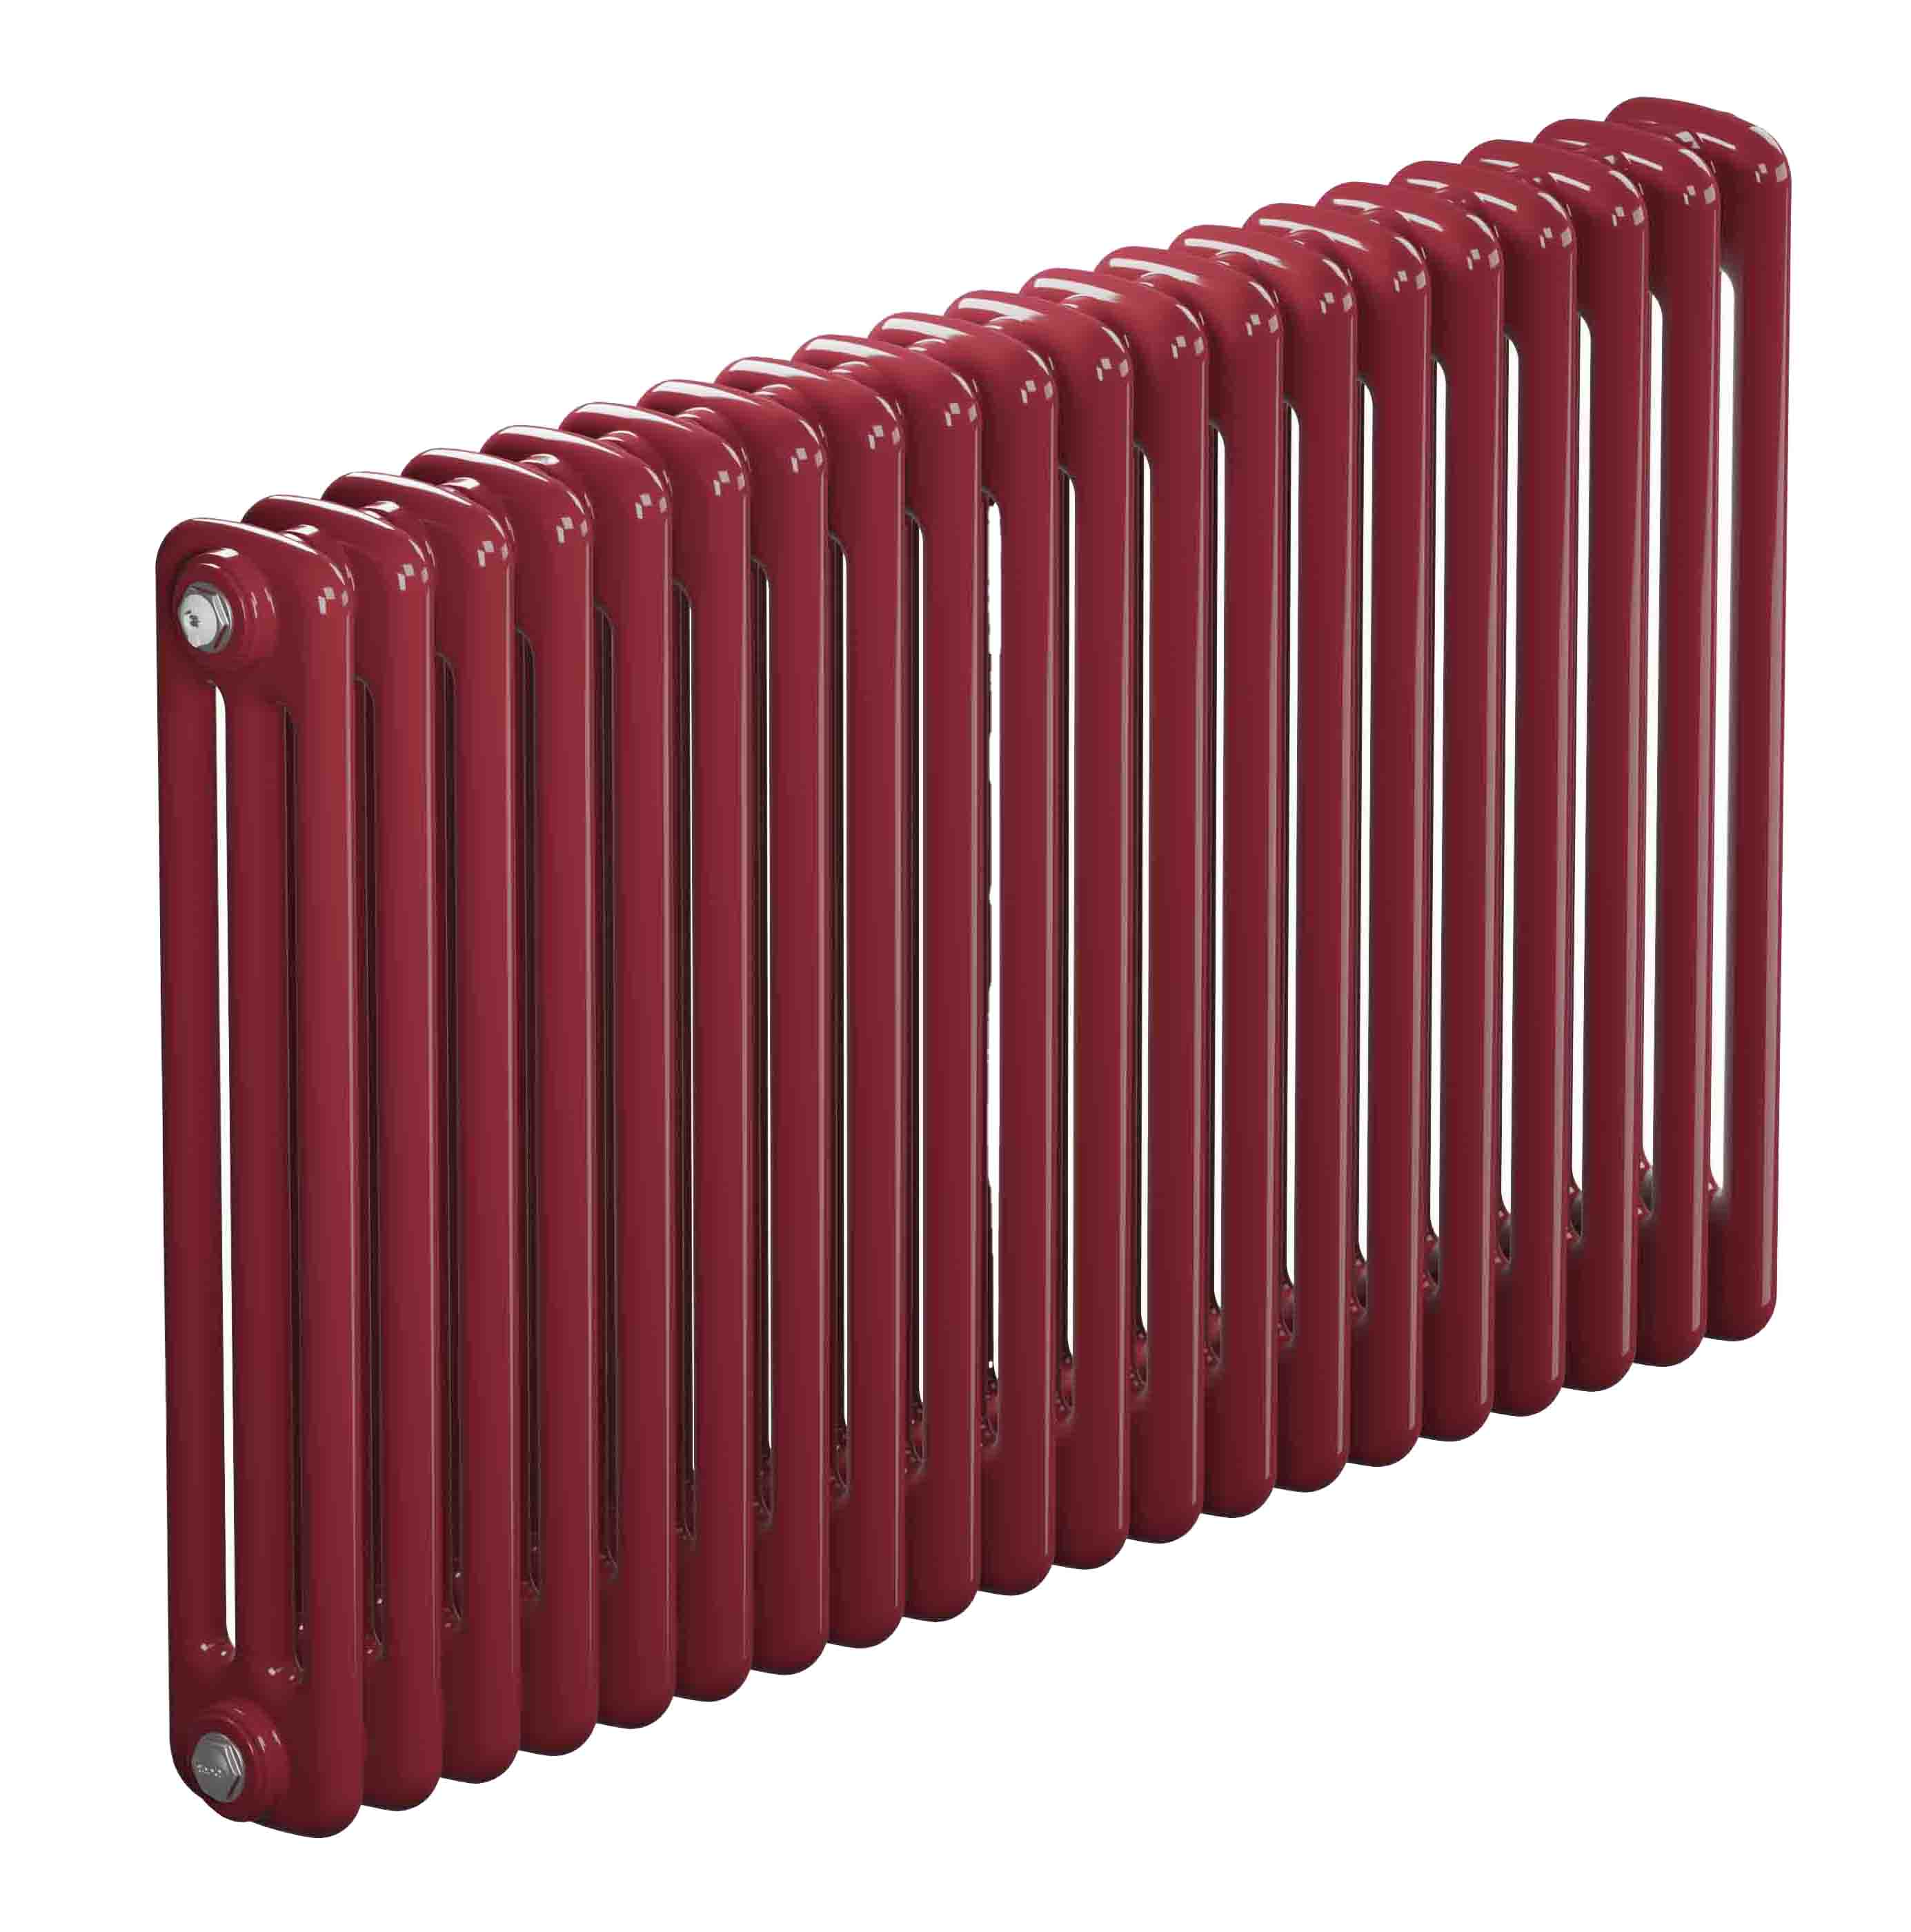 Трубчатый радиатор Rifar Tubog 3057, 14 секций, 3-колончатый, красно-коричневый (бордо), DV1